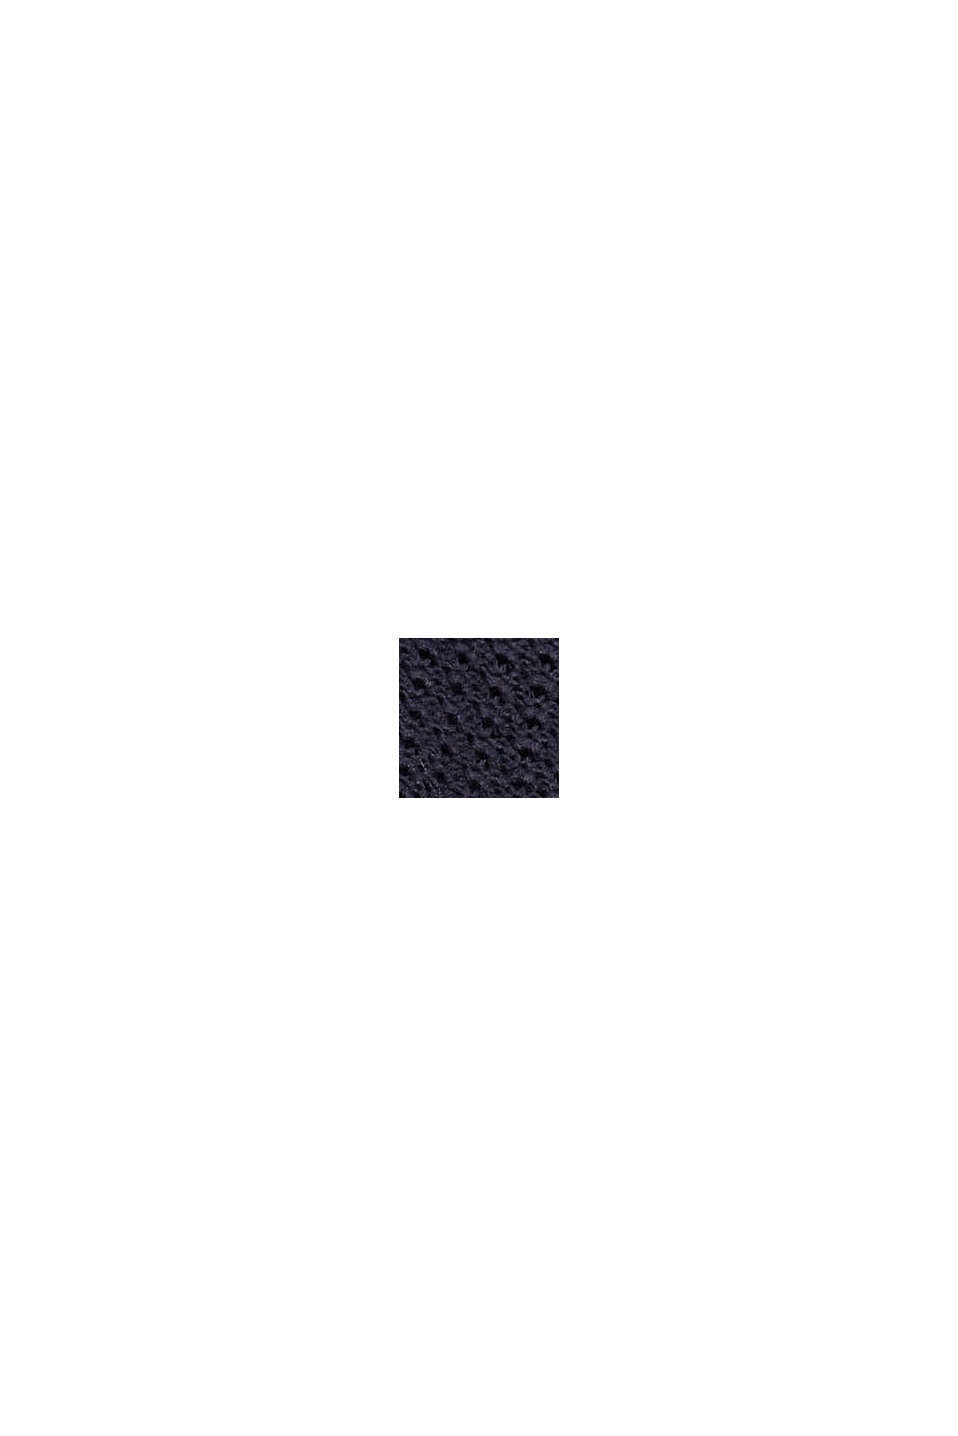 Jersey de punto texturizado con cuello alto, NAVY, swatch